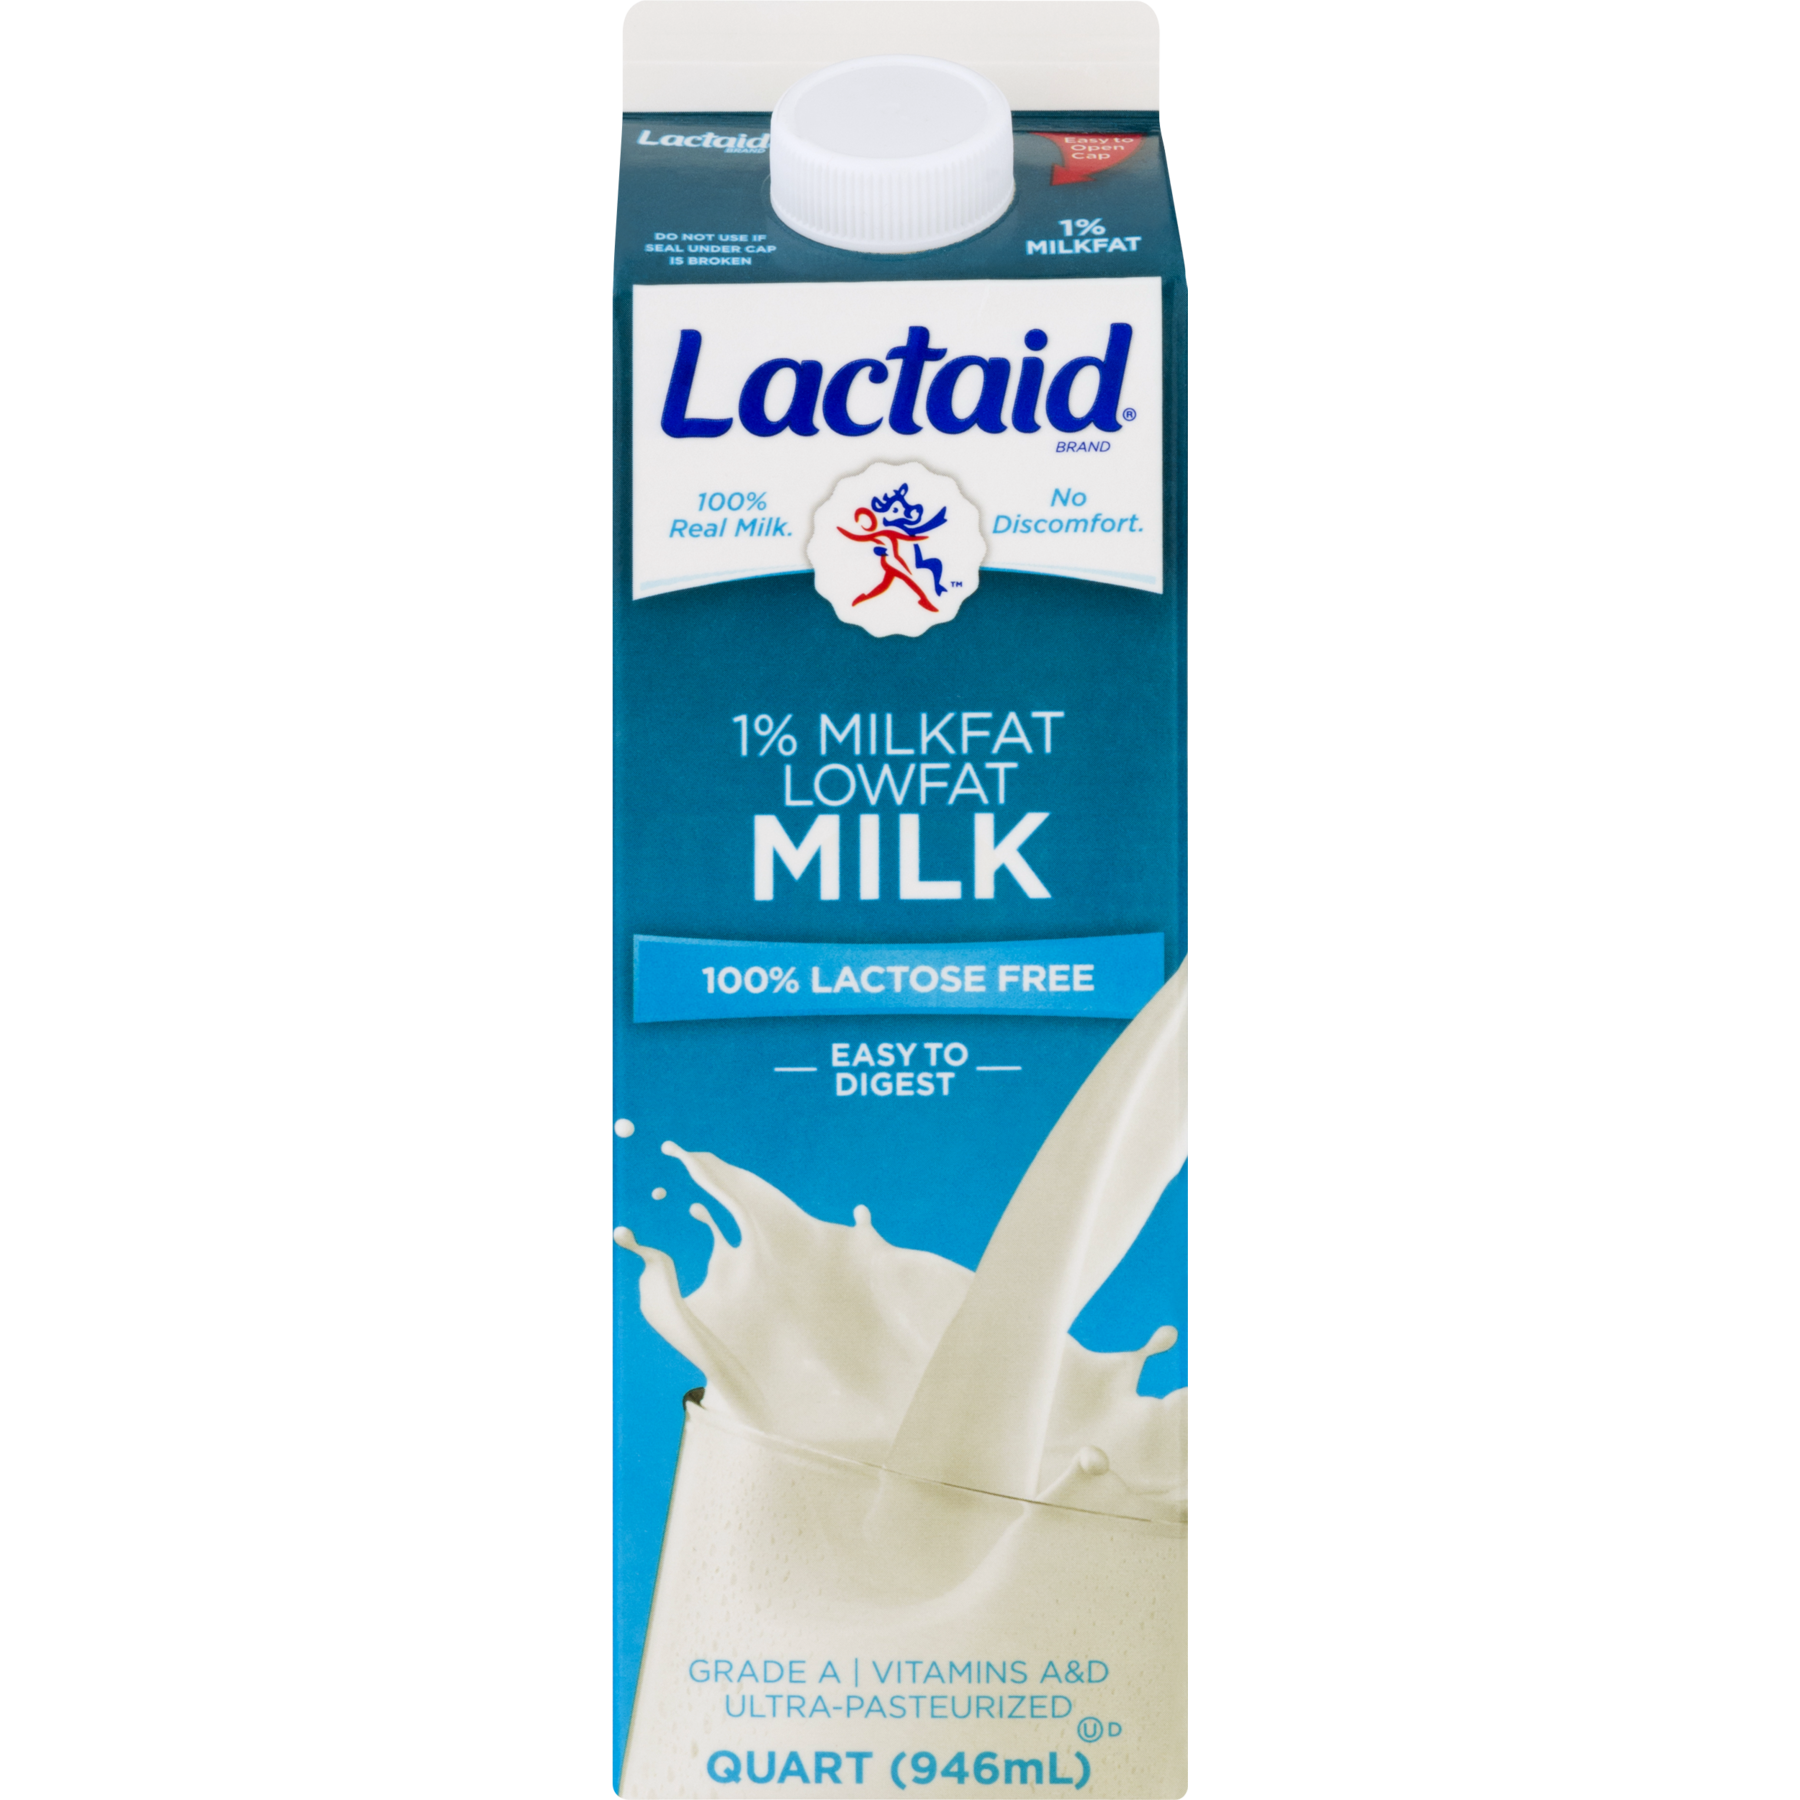 Lactaid milk on keto diet  Diet Blog